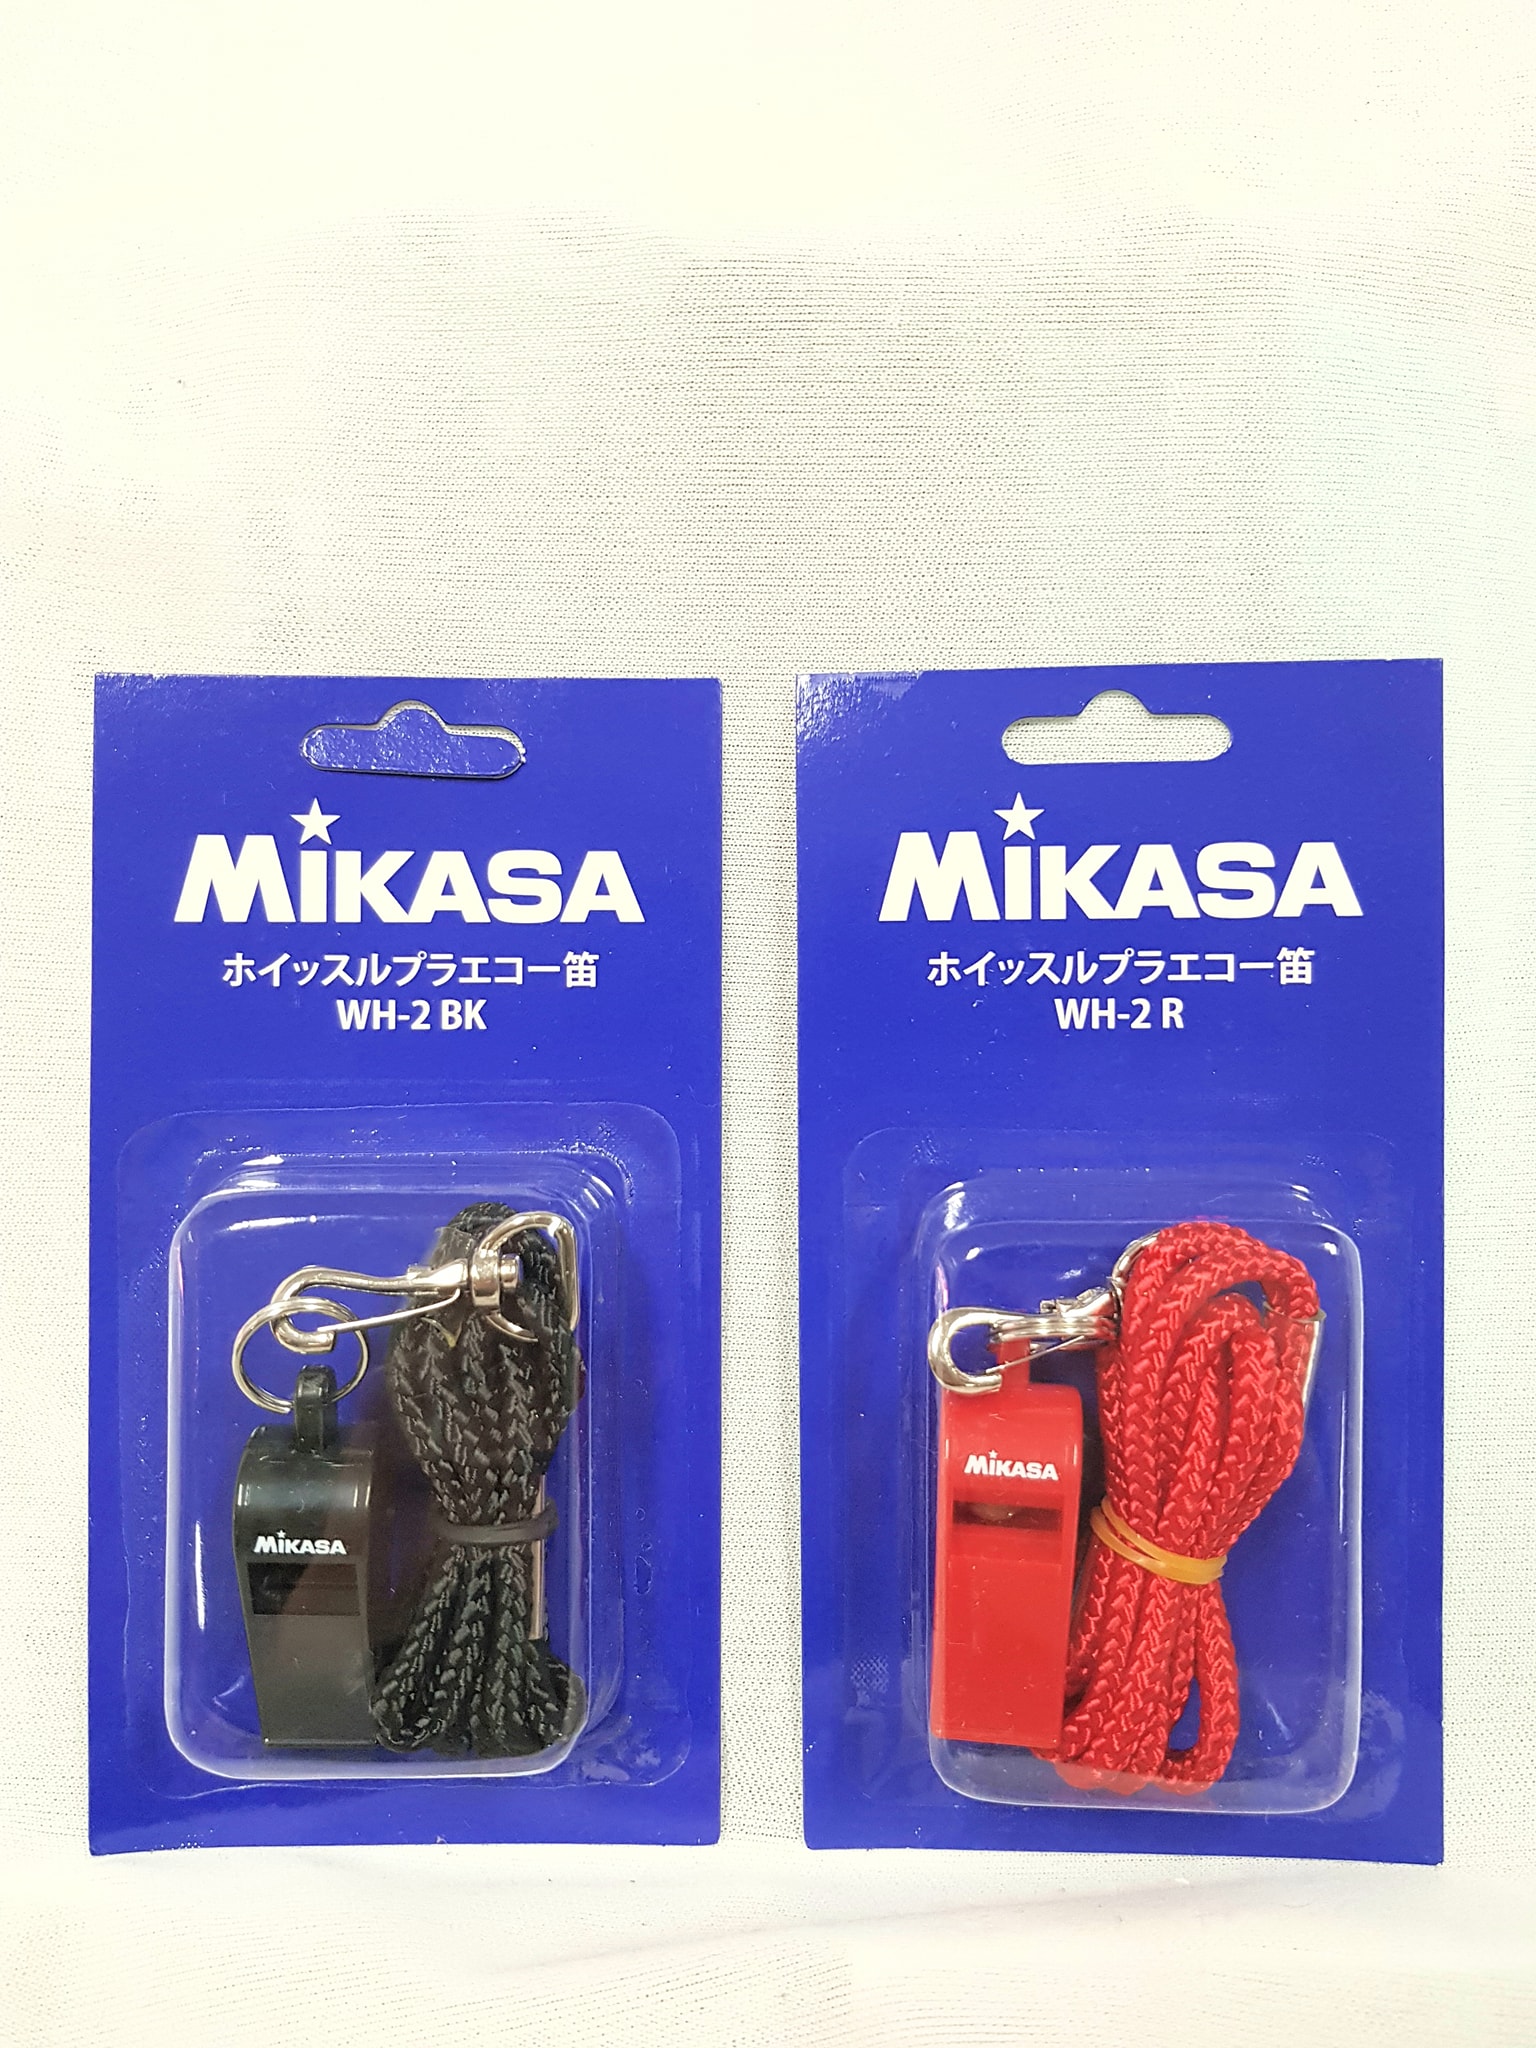 นกหวีด Mikasa รุ่น WH-2 ของแท้ 100%  มีให้เลือก สี ดำ/แดง   1 ชิ้น